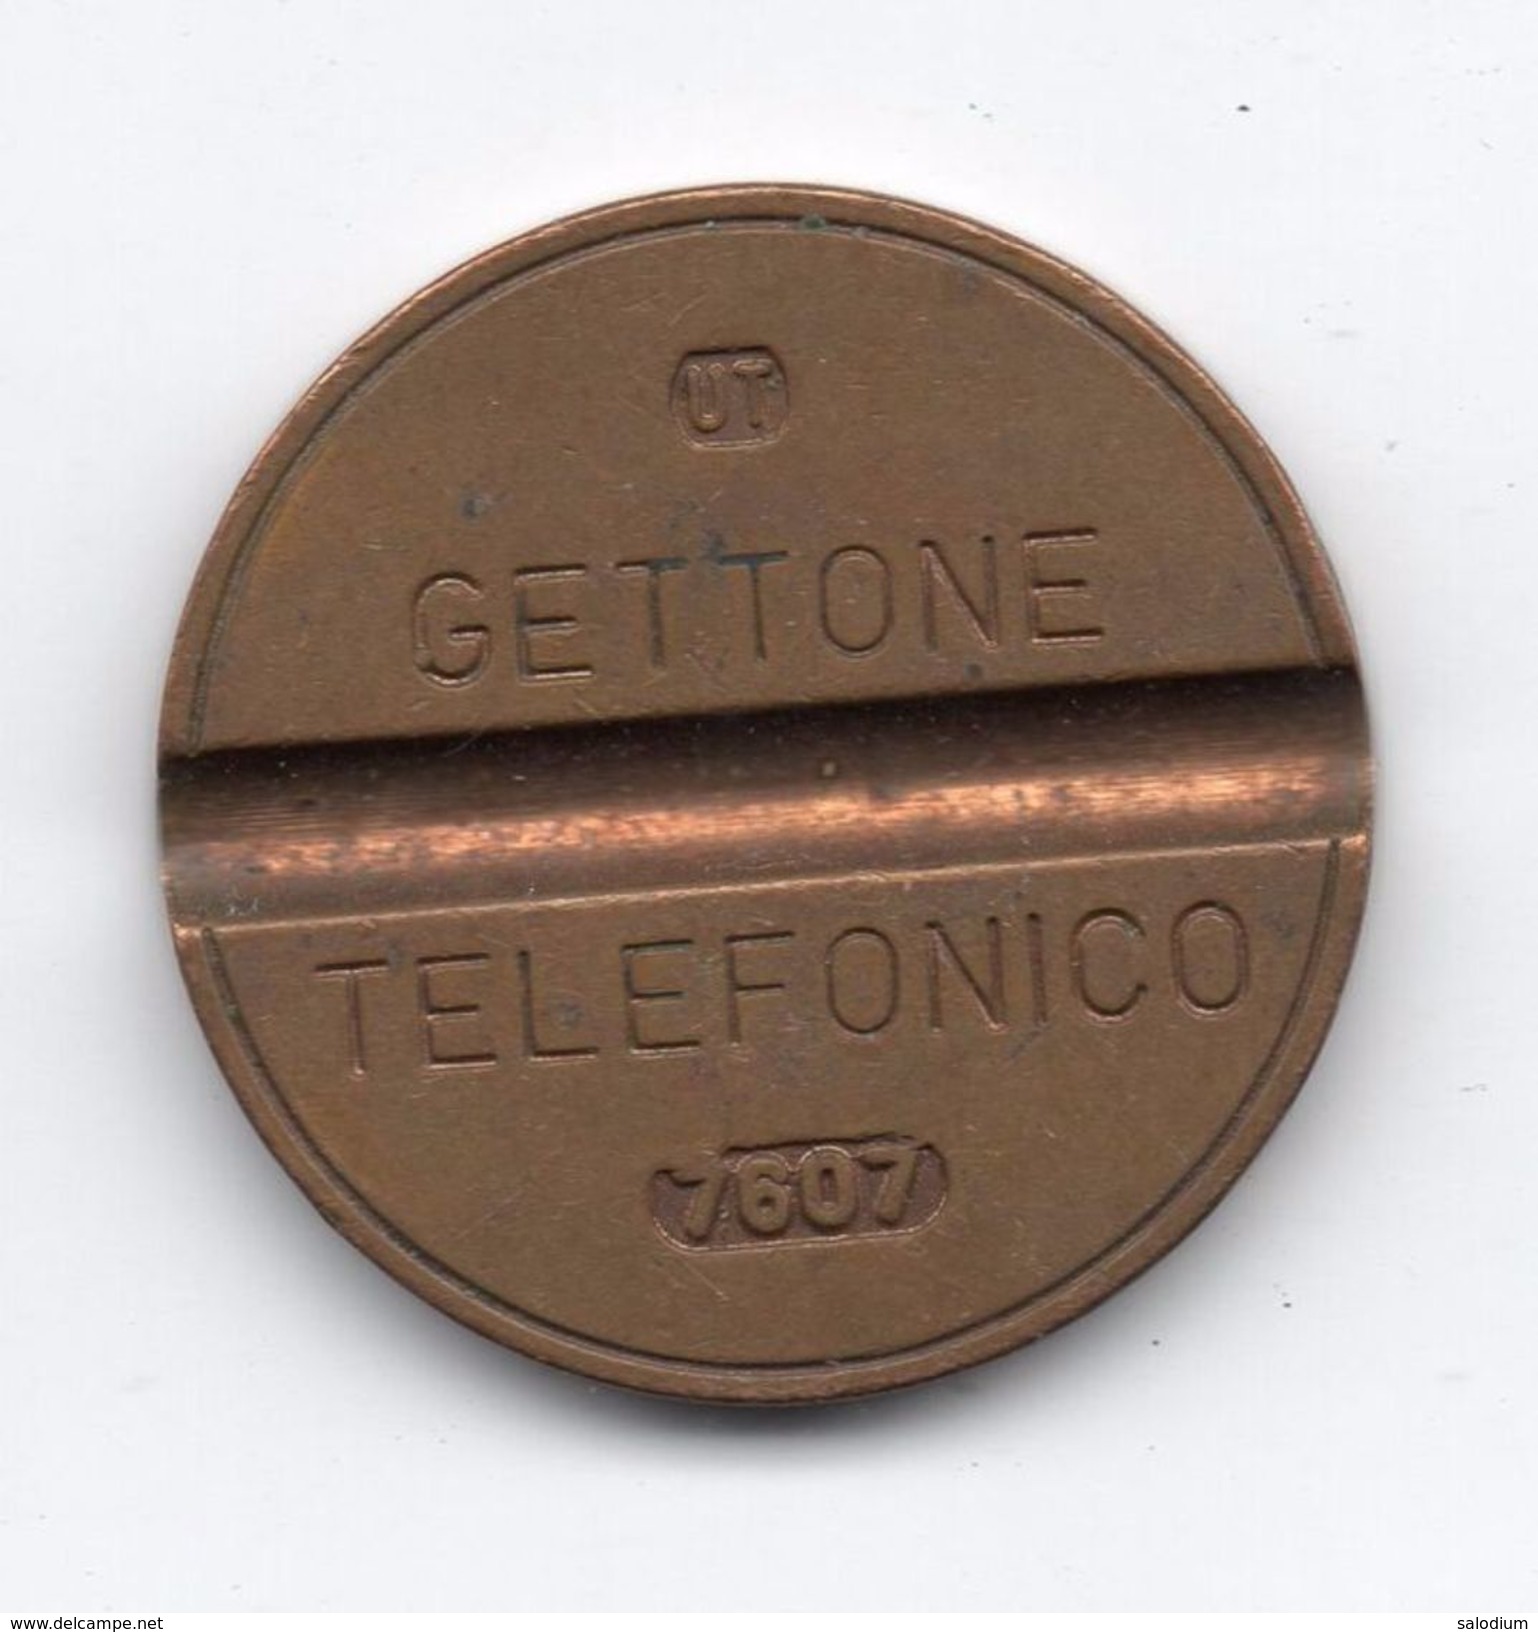 Gettone Telefonico 7607 Token Telephone - (Id-787) - Professionnels/De Société